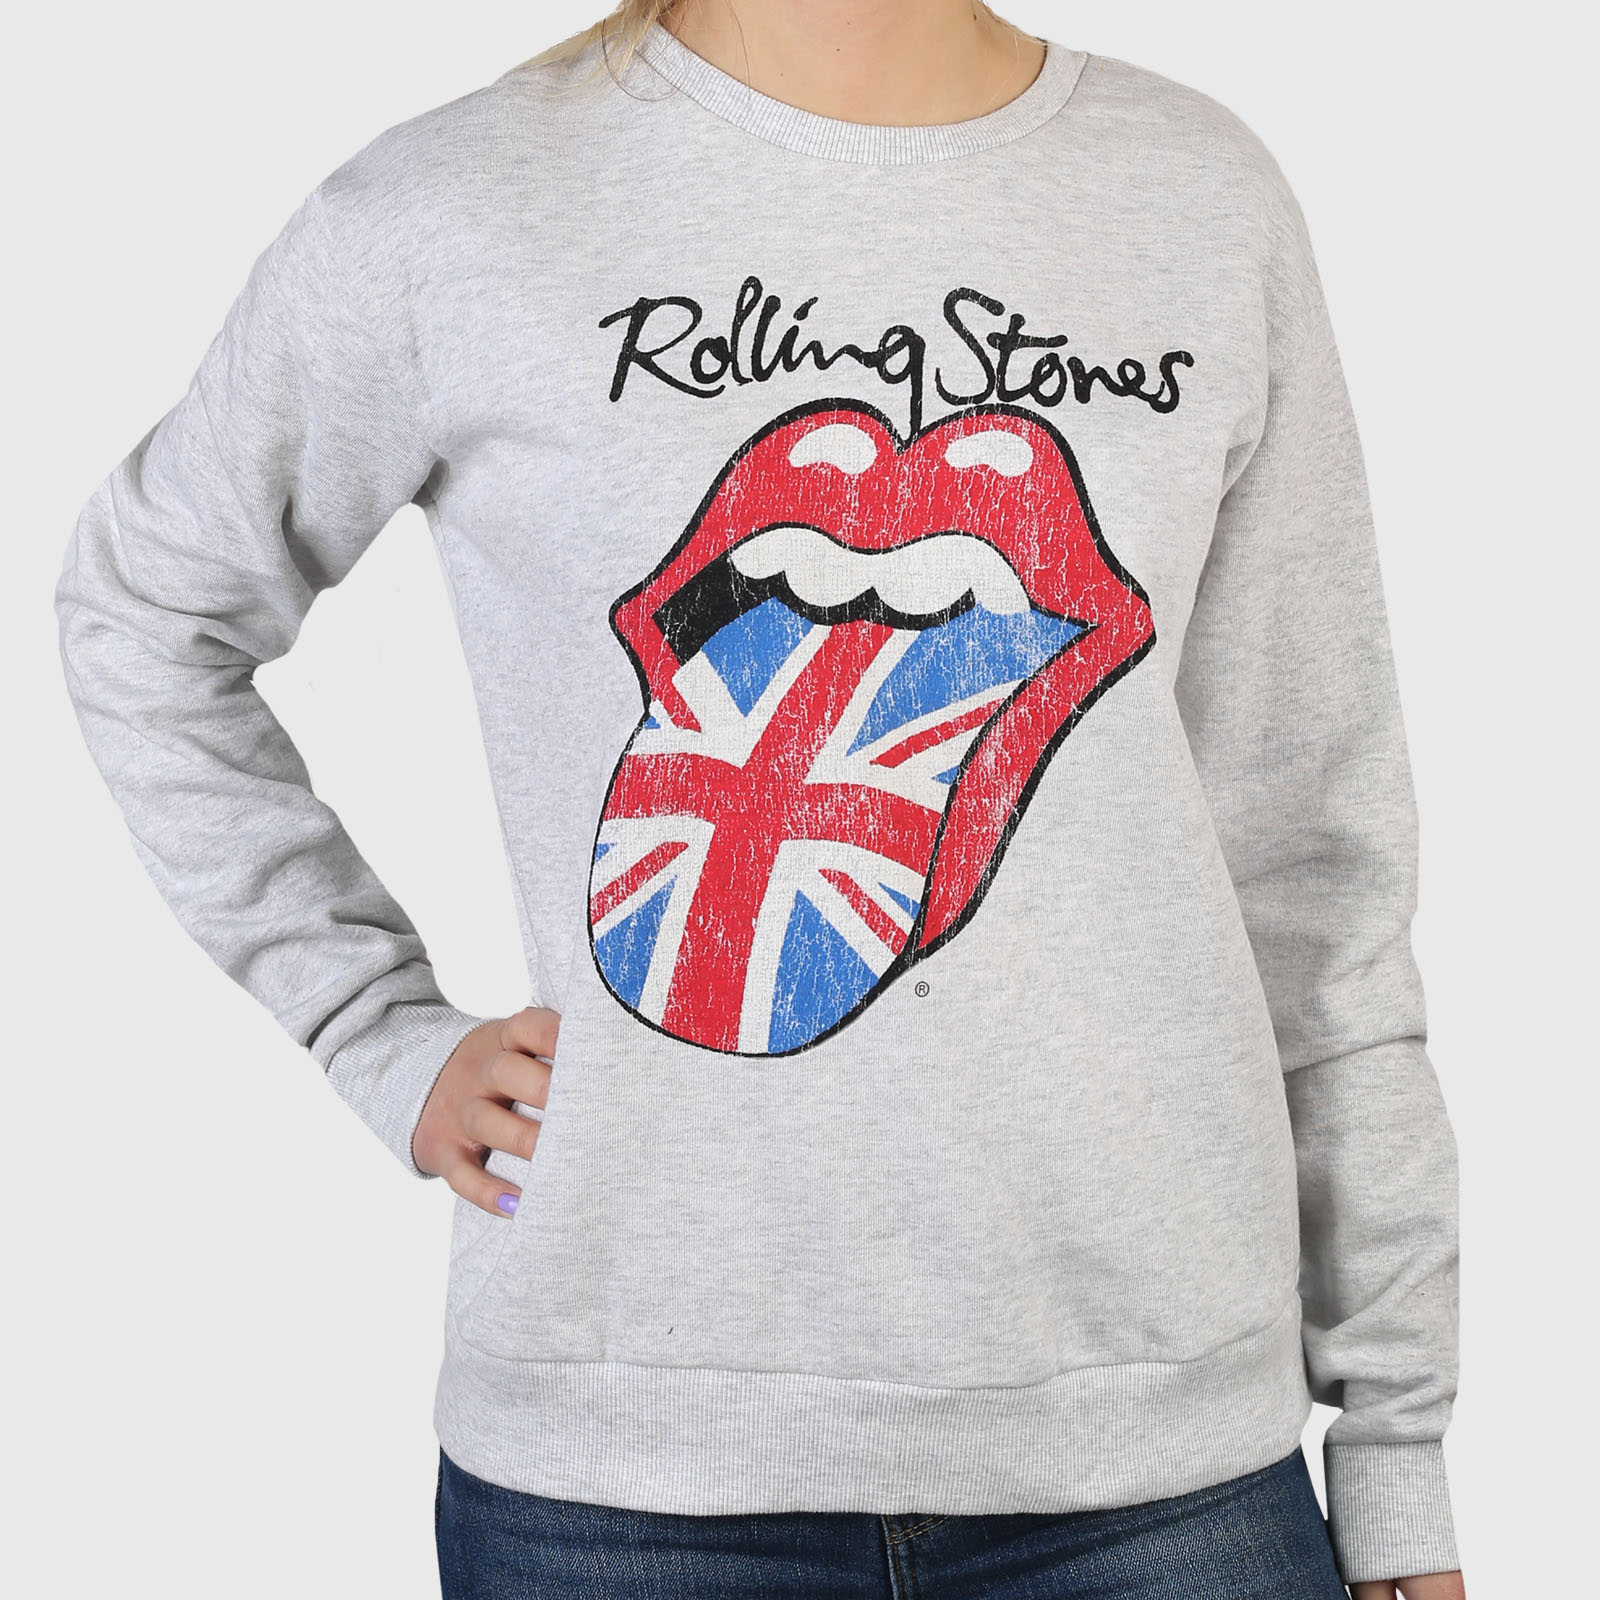 Купить в интернет магазине женскую кофту The Rolling Stones